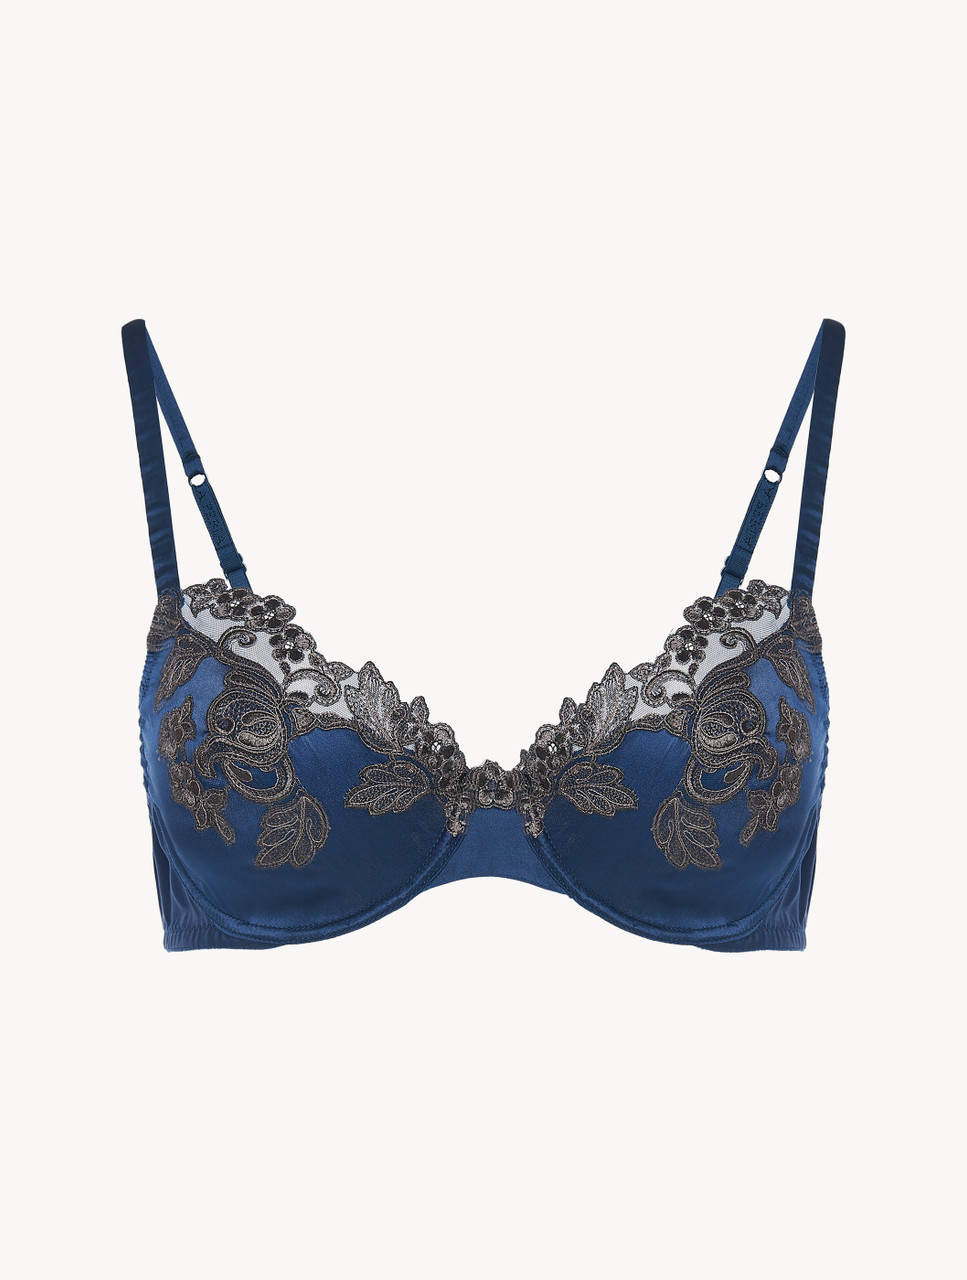 Luxury Silk Underwire Bra in Dark Blue with Frastaglio | La Perla